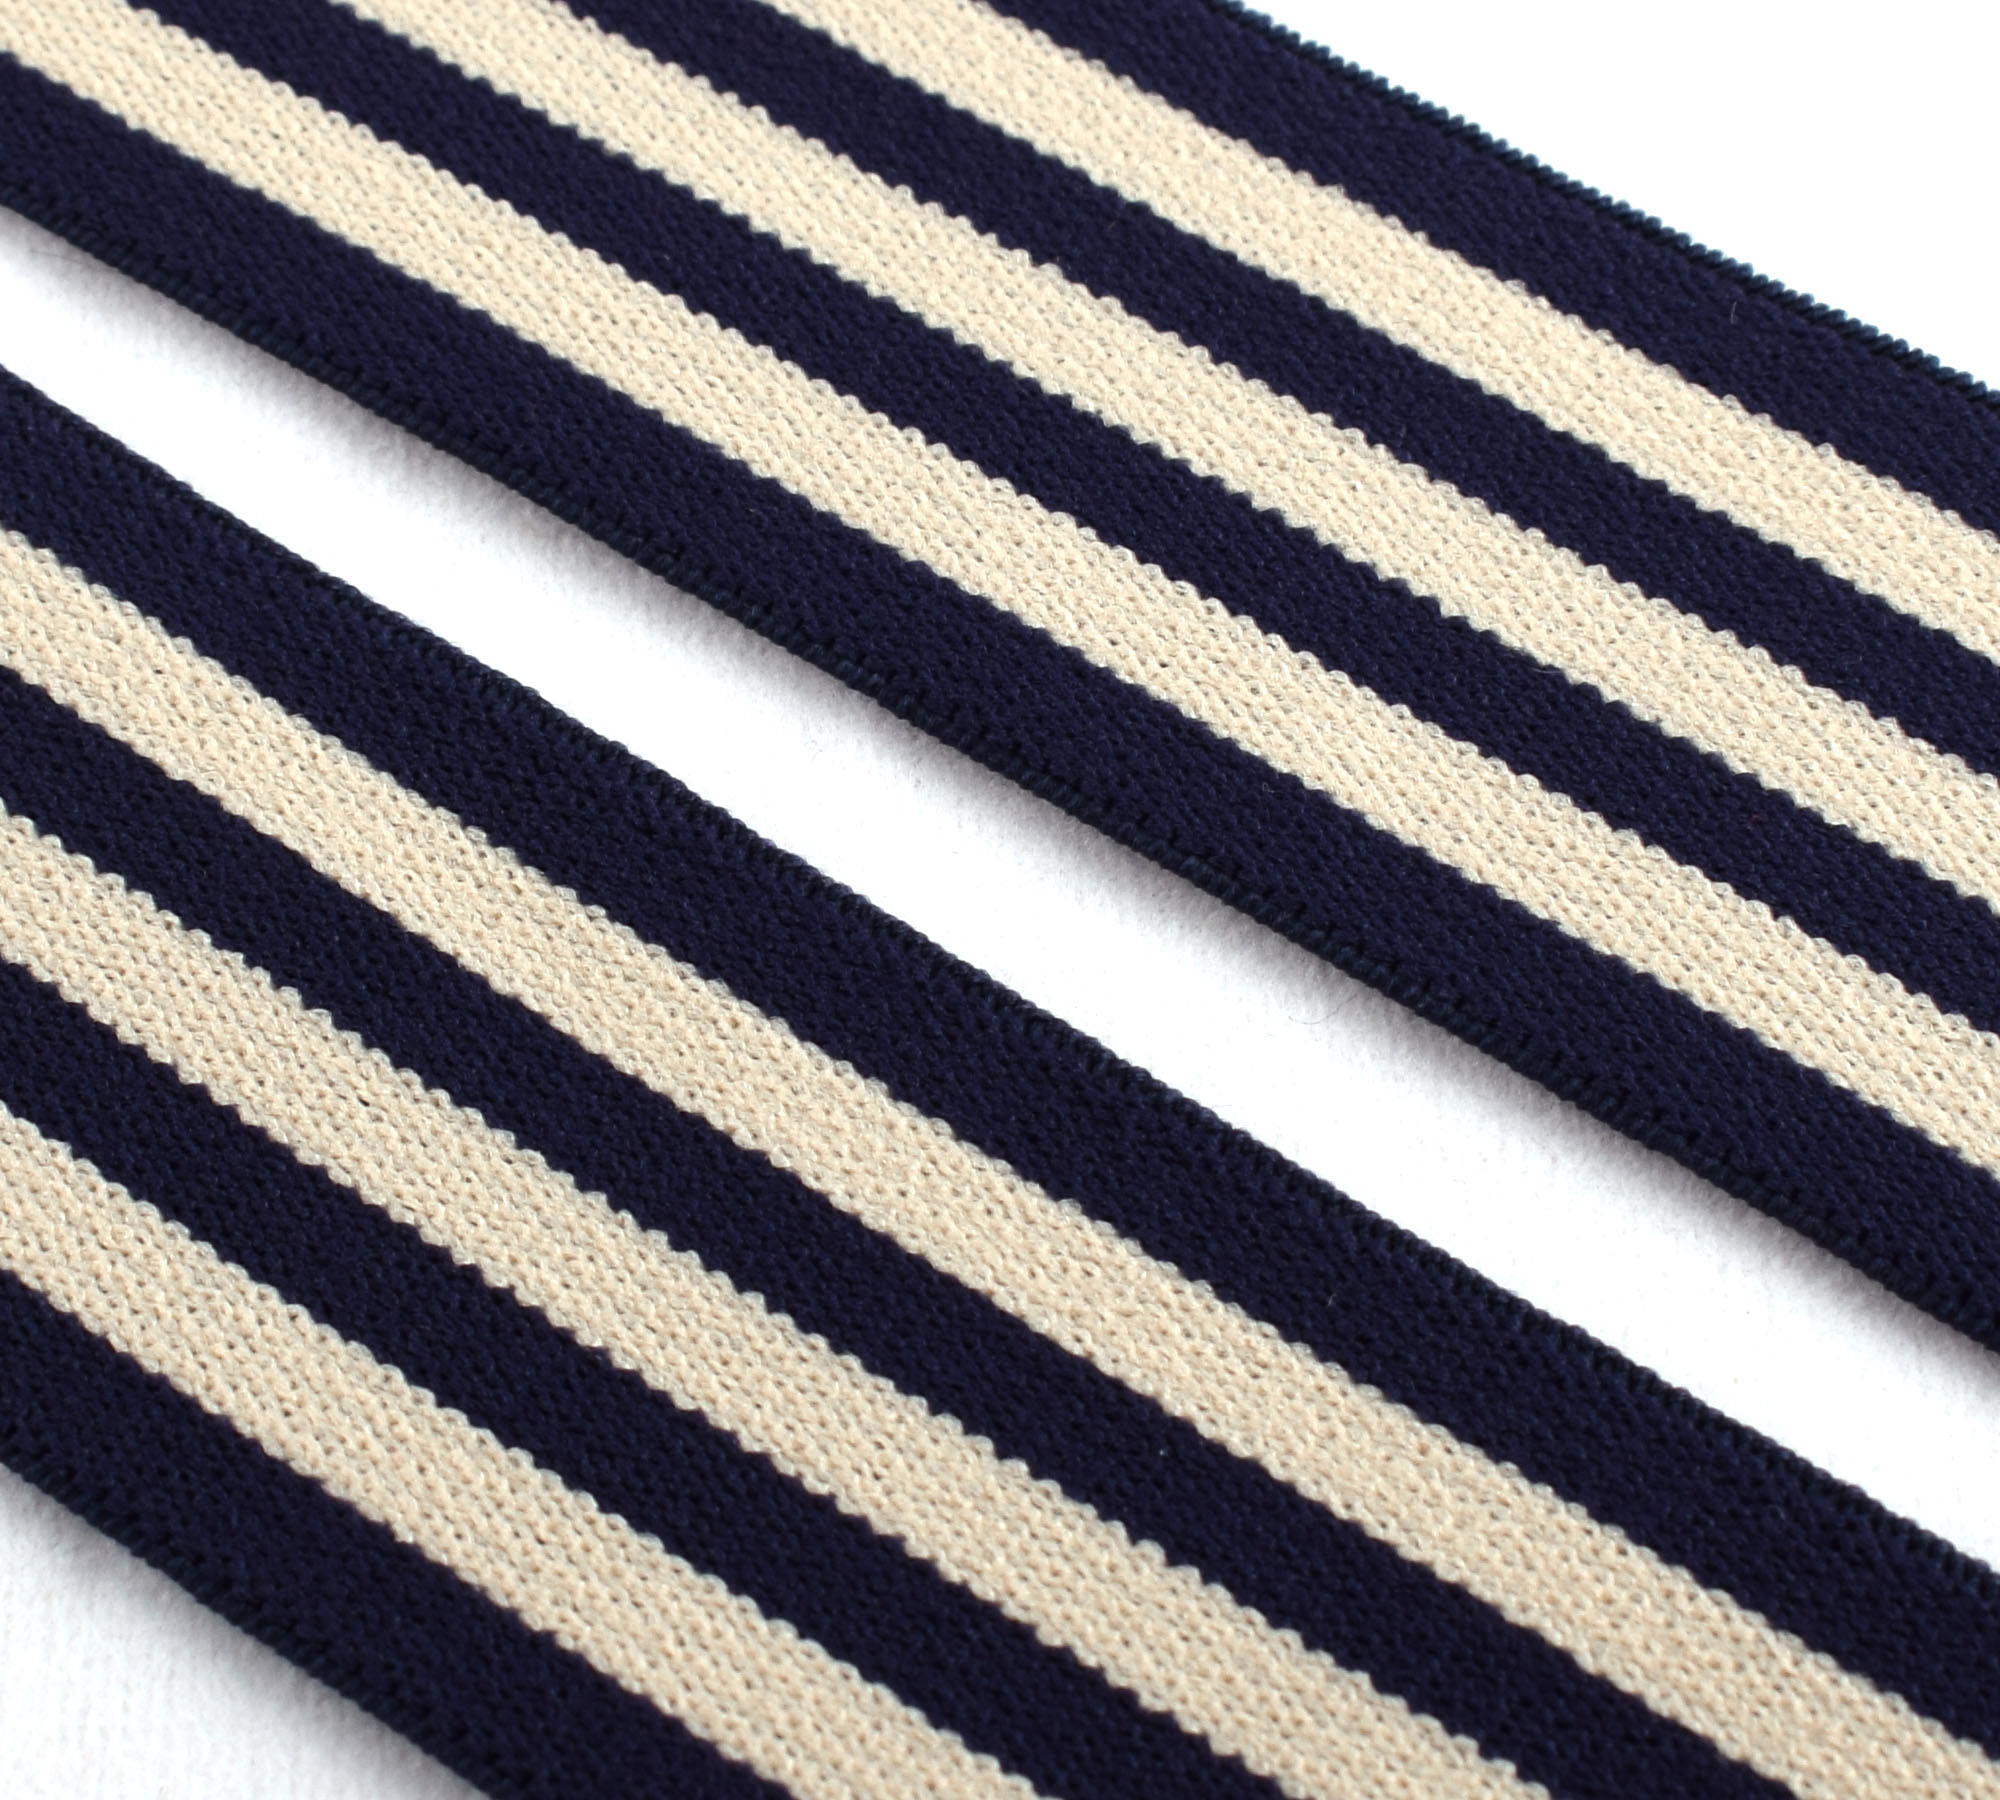 Bande élastique en sangle à rayures à rayures de 1,5 pouce de 1,5 pouce utilisée kaki / bleu marine pour design de vêtements arc-en-ciel bande élastique rayée